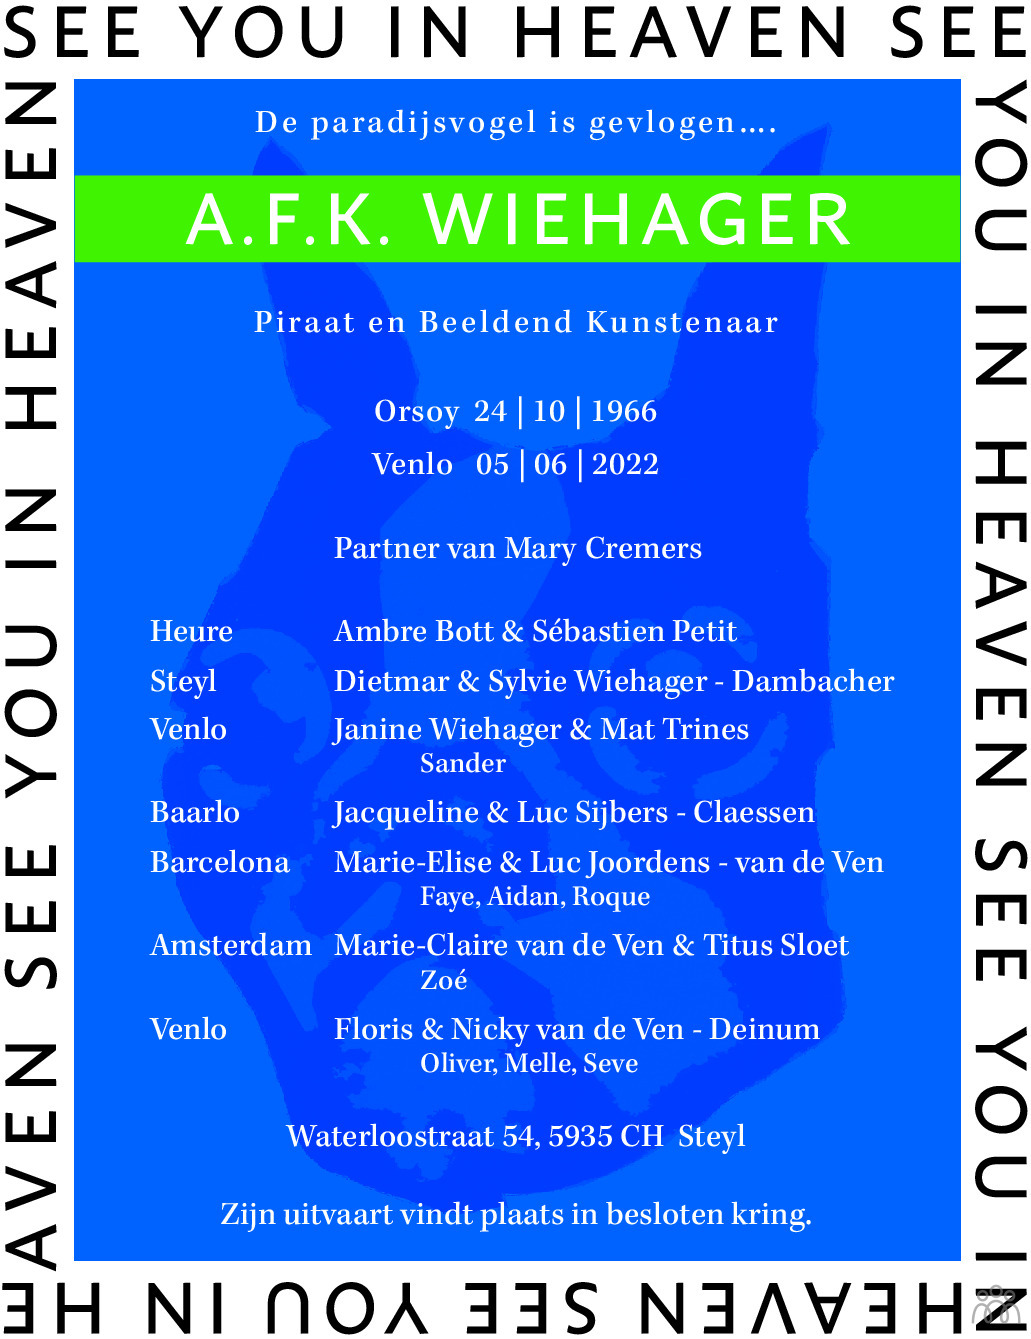 Overlijdensbericht van A.F.K. Wiehager in De Limburger